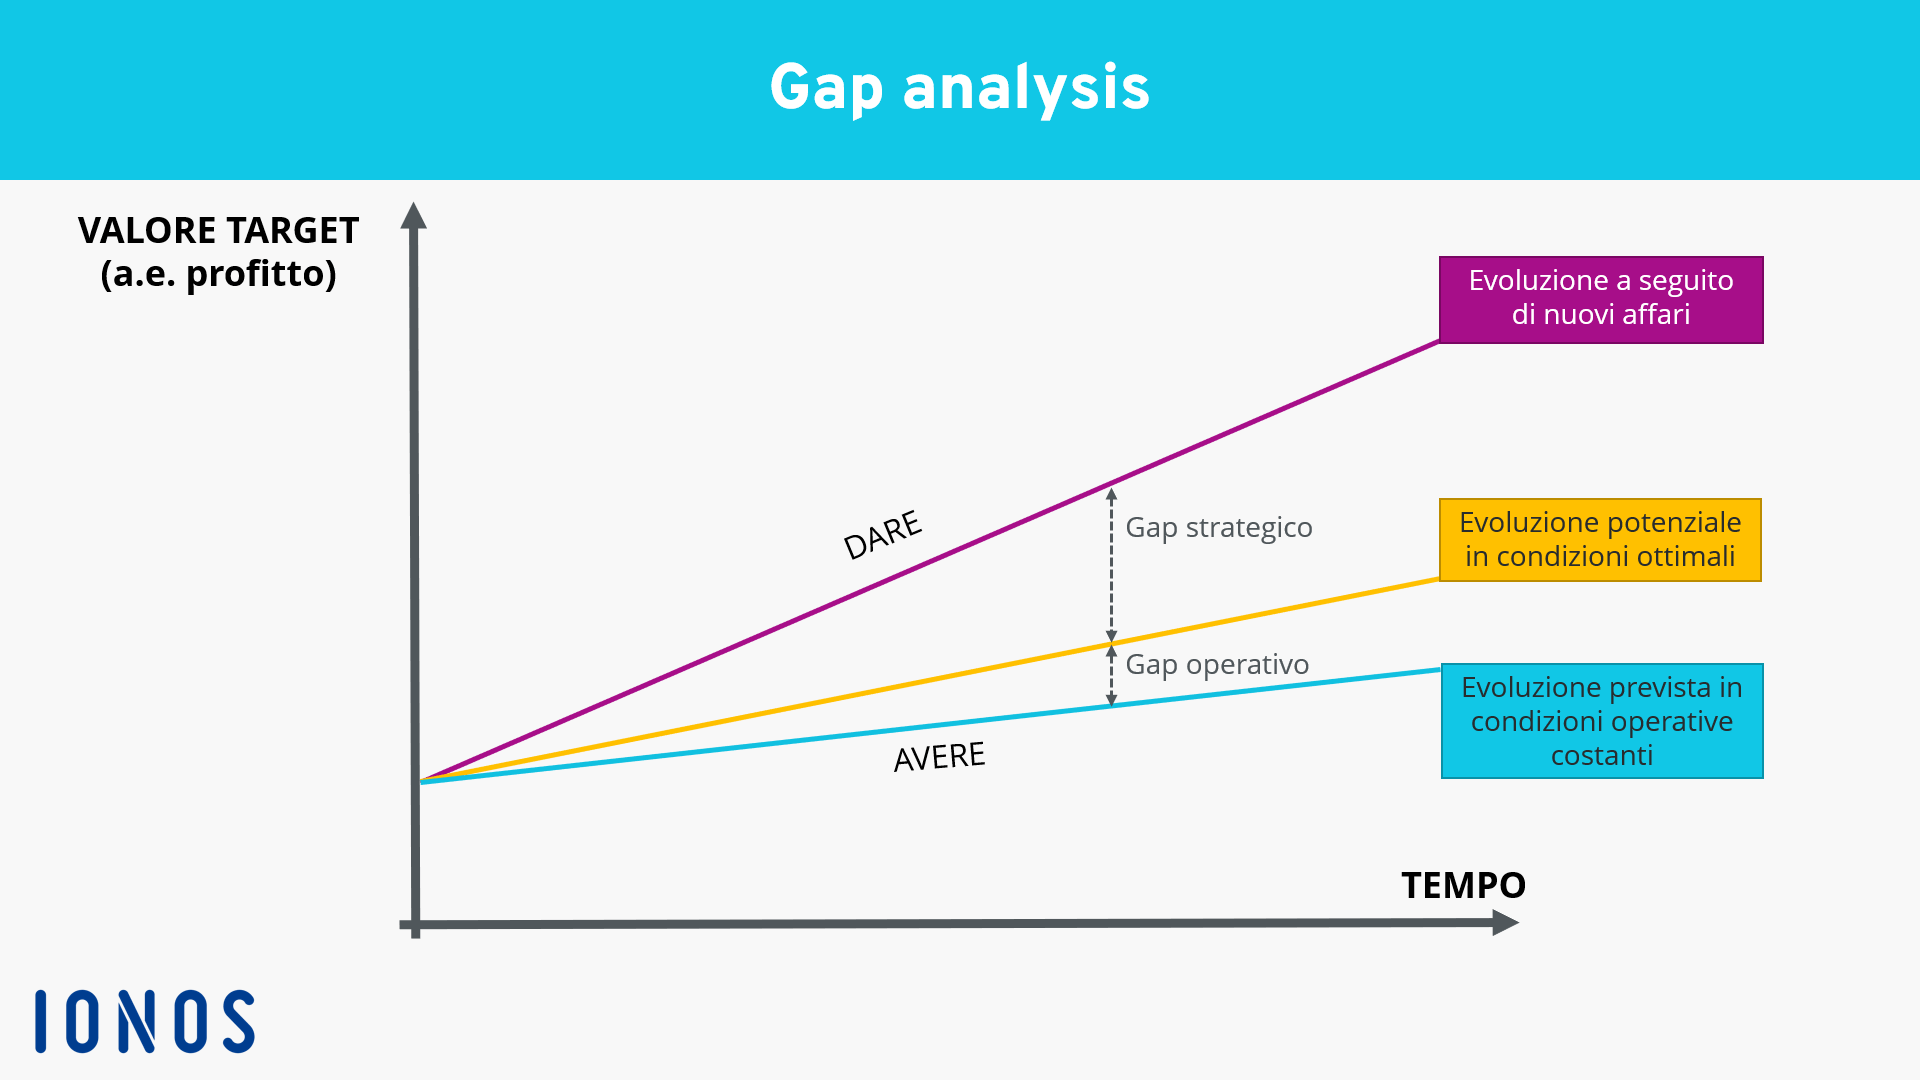 Rappresentazione grafica della gap analysis nel sistema di coordinate